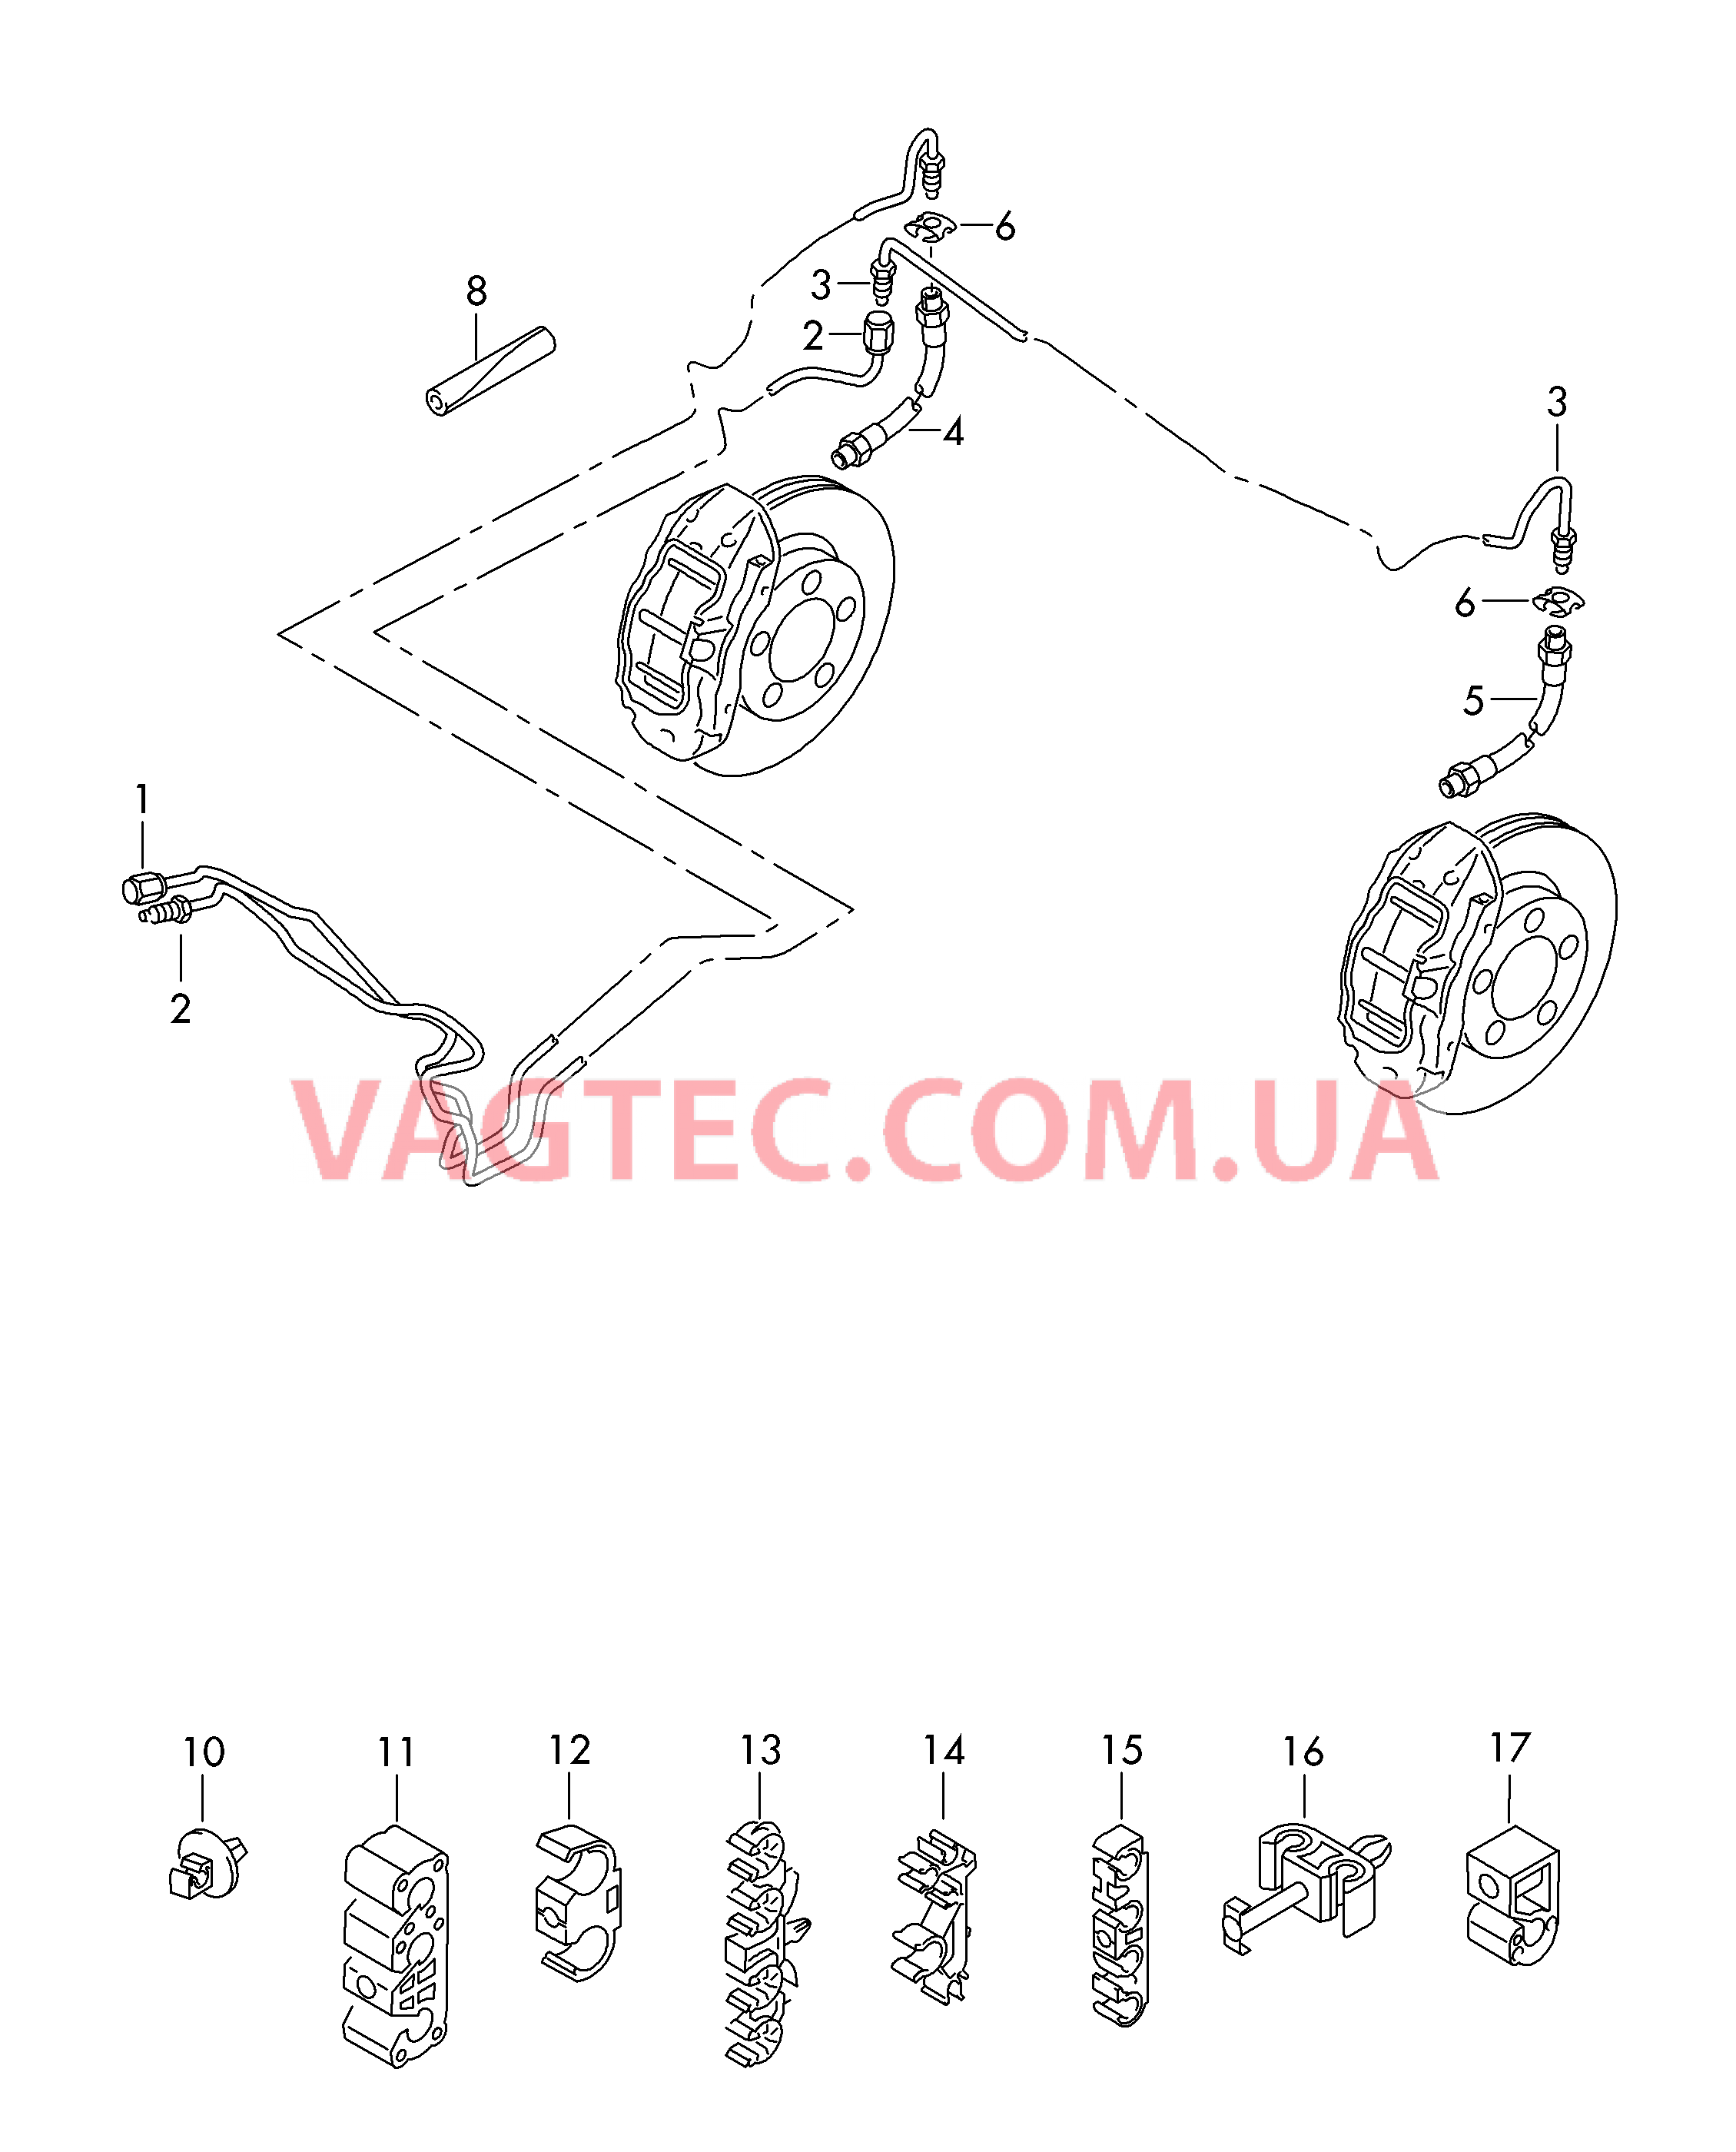 Тормозная трубка Тормозной шланг  для VOLKSWAGEN Touareg 2014